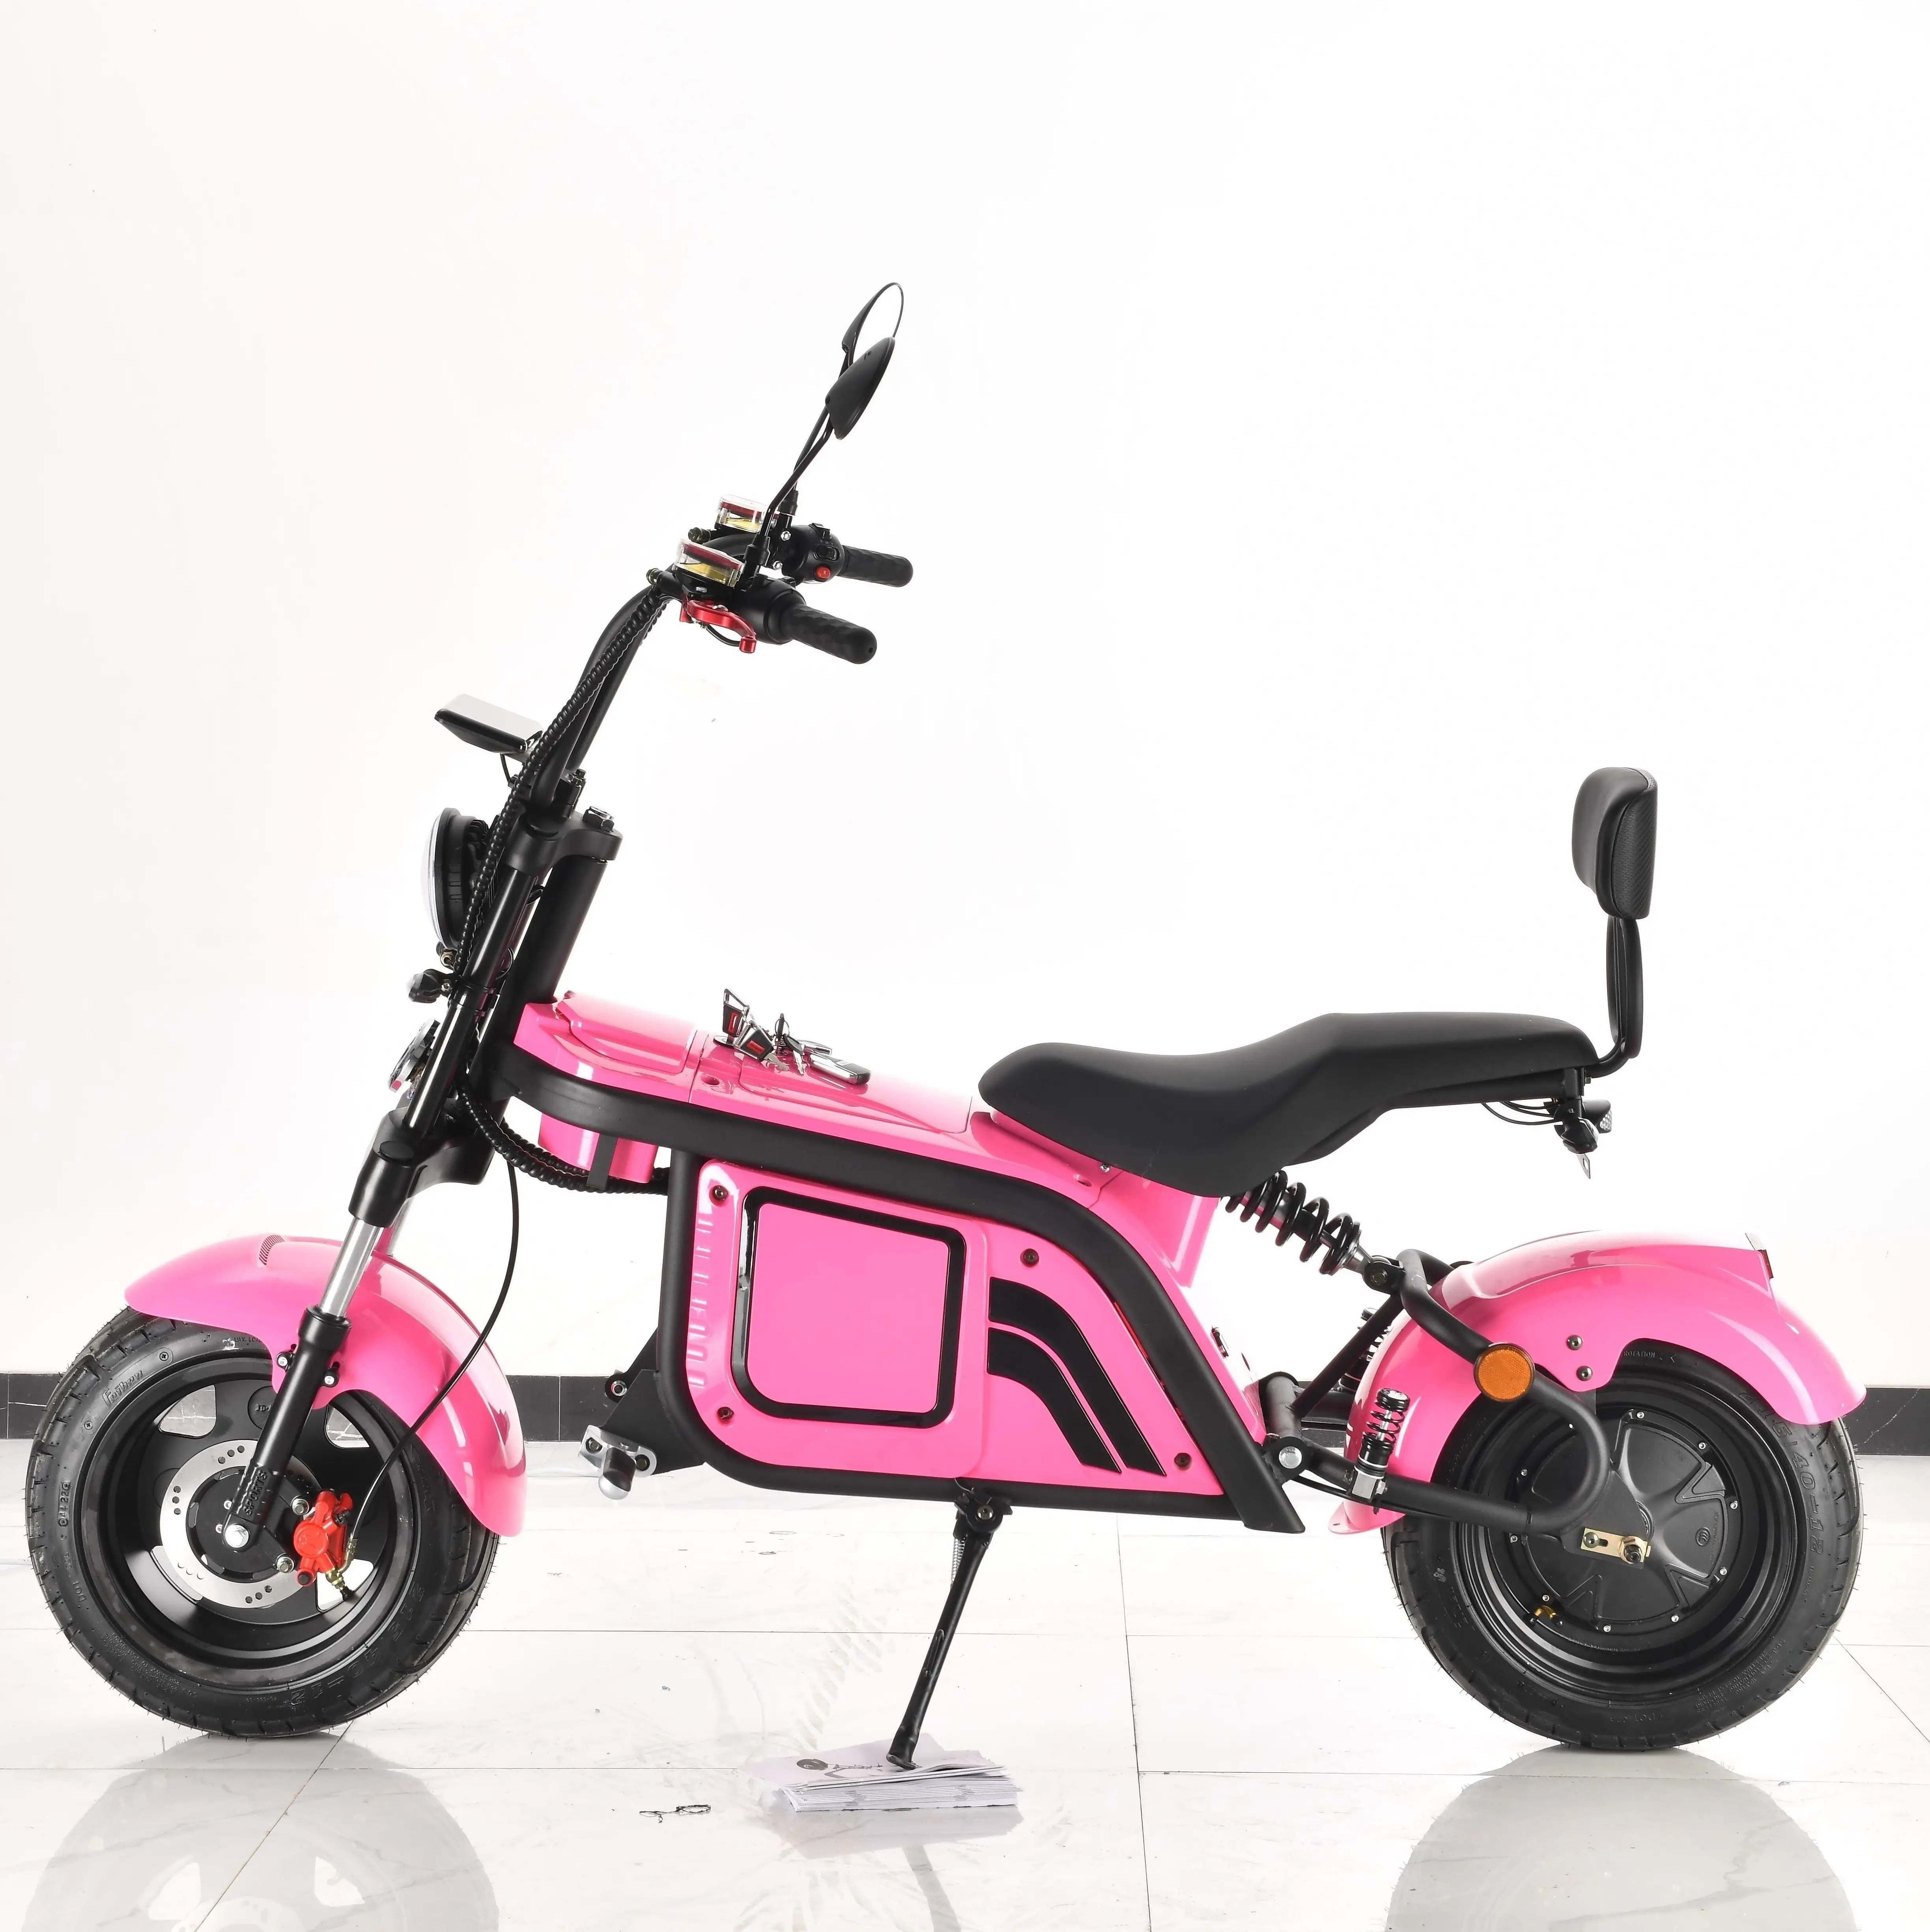 Прямая продажа от производителя, новый трехколесный электрический мотоцикл Yidegreen, Электрический скутер